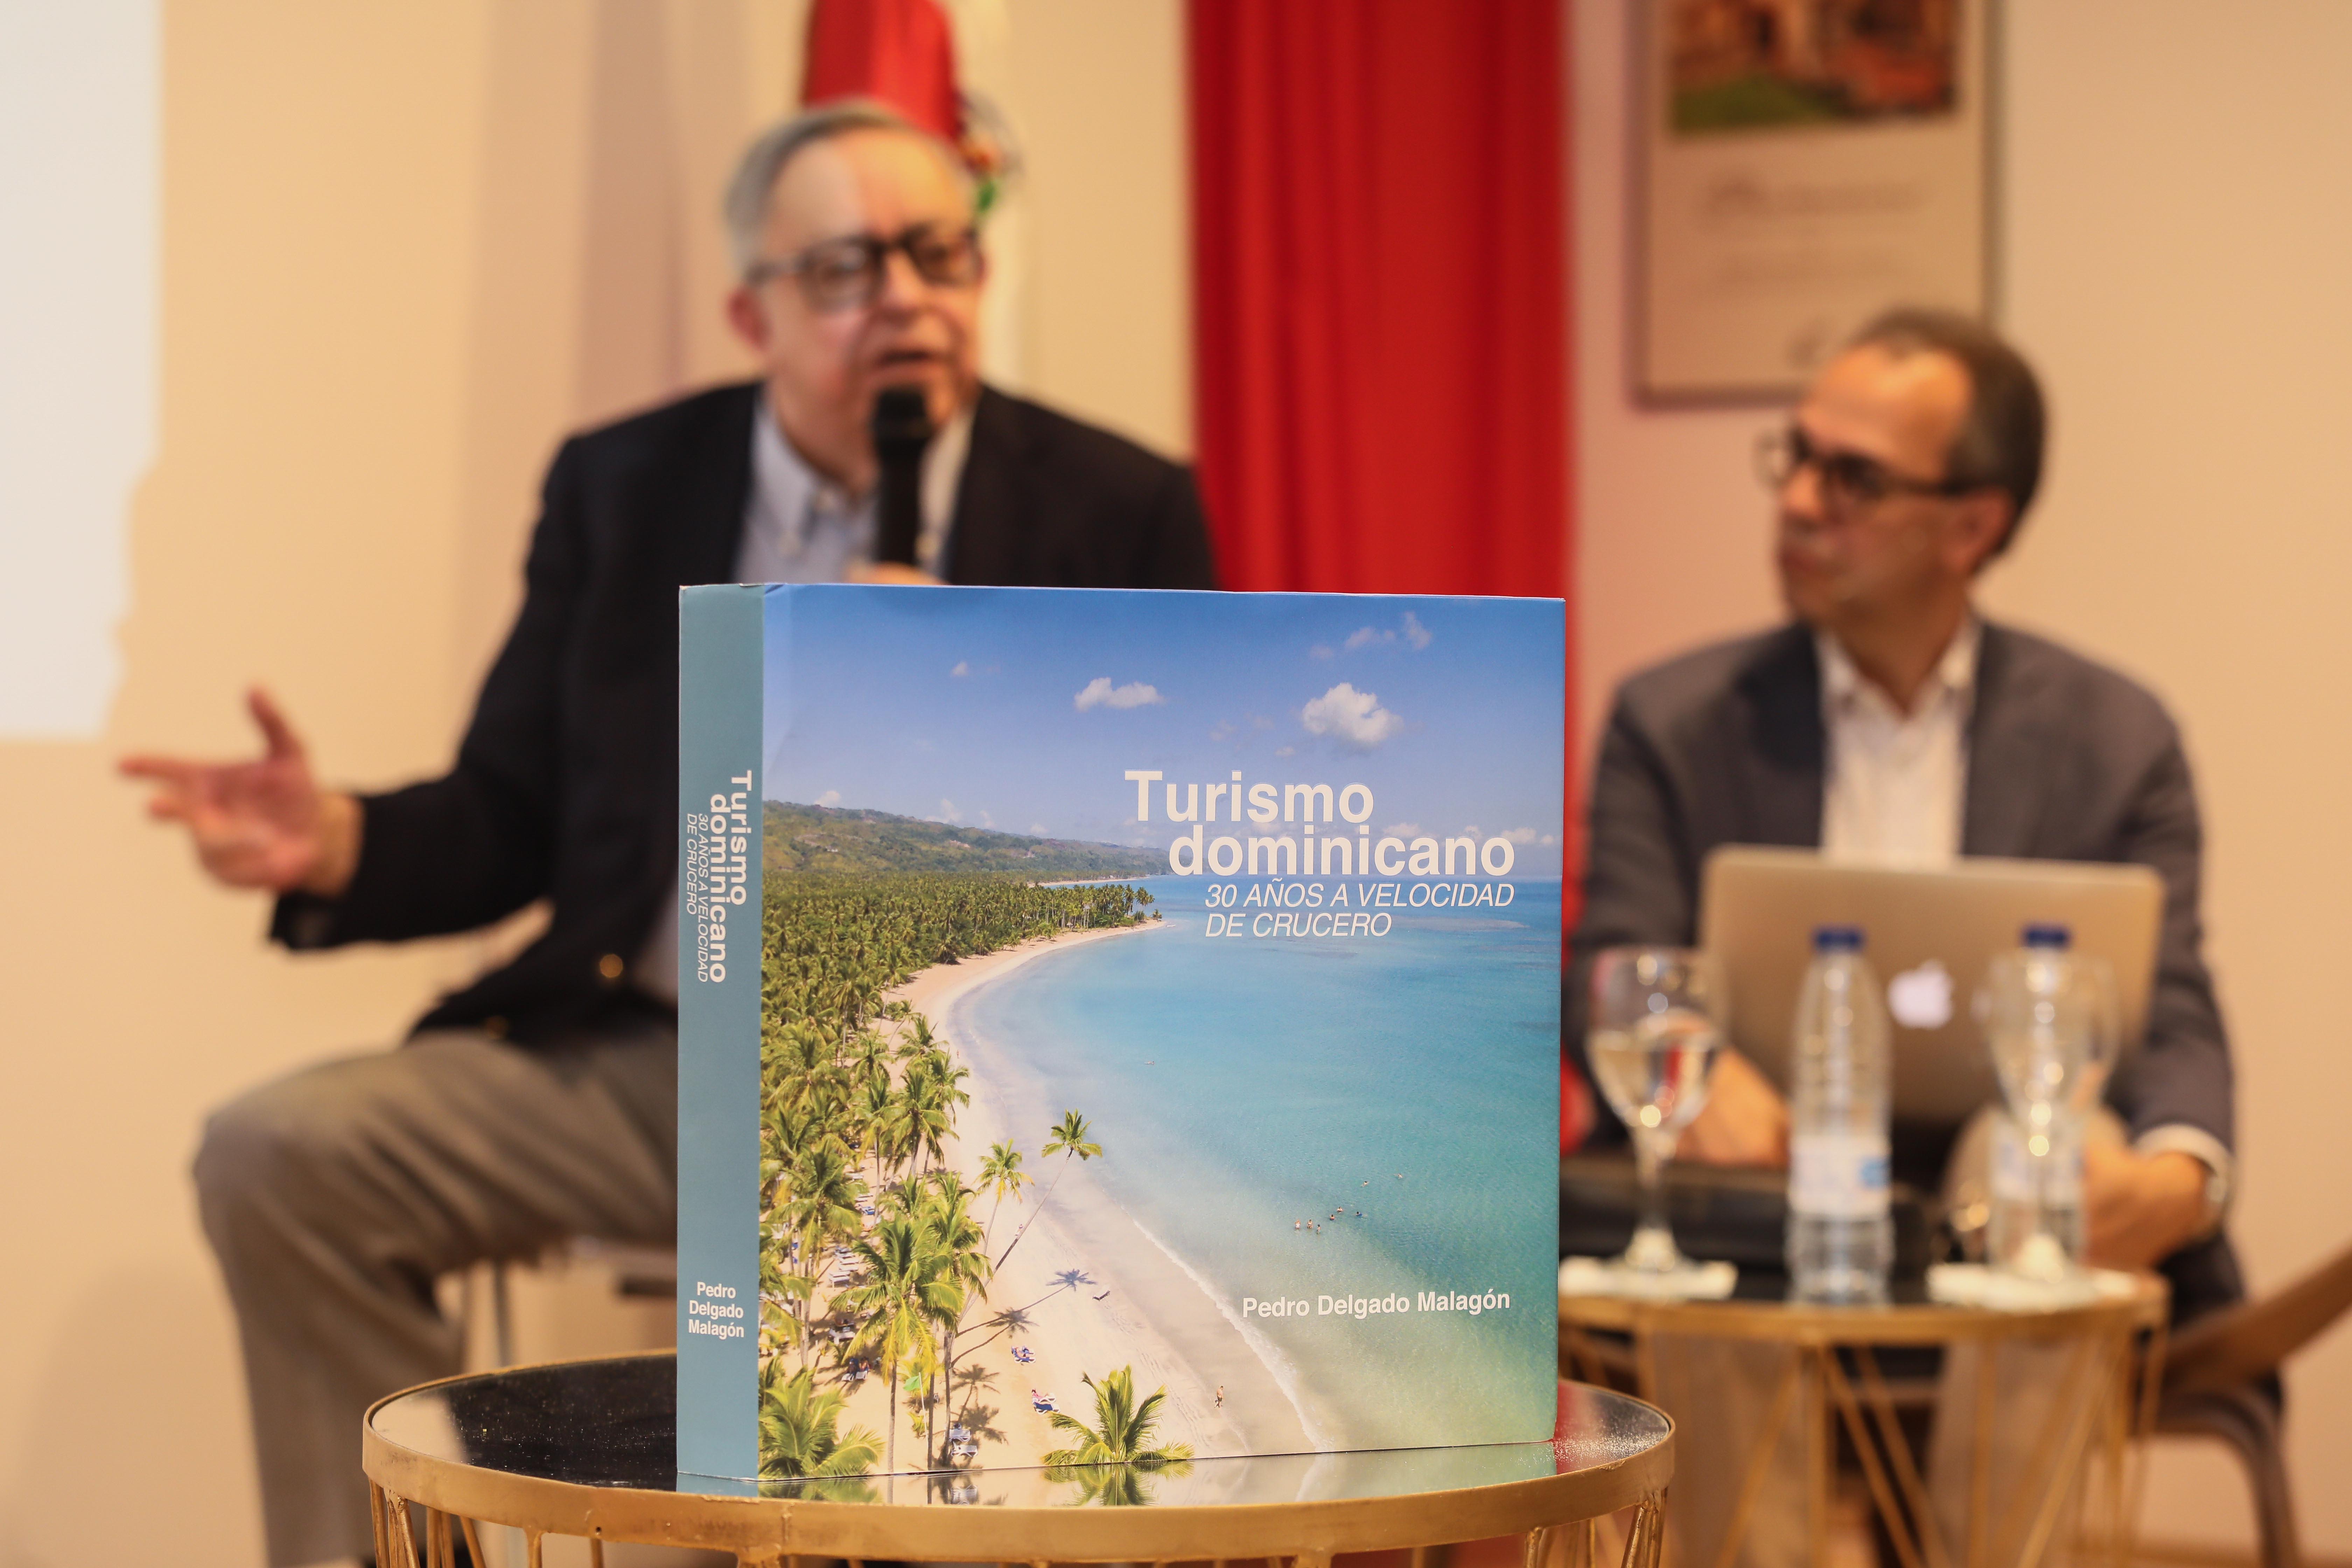 Popular presenta en Feria del Libro de Madrid “Turismo dominicano: 30 años a velocidad de crucero”